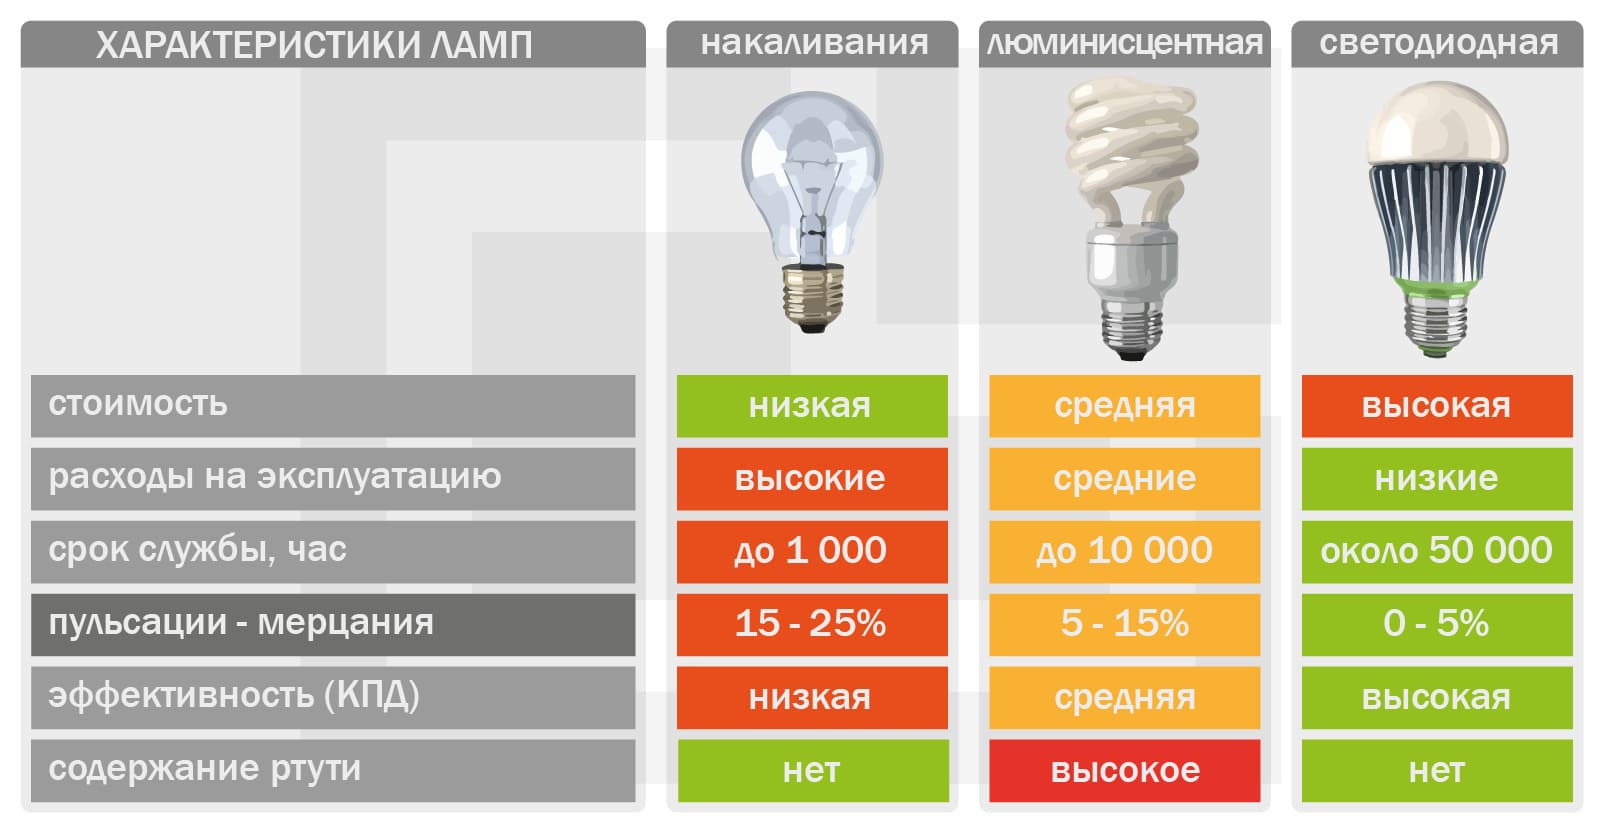 Характеристики и параметры лампочек, которые наиболие часто используются для освещения в домах и квартирах